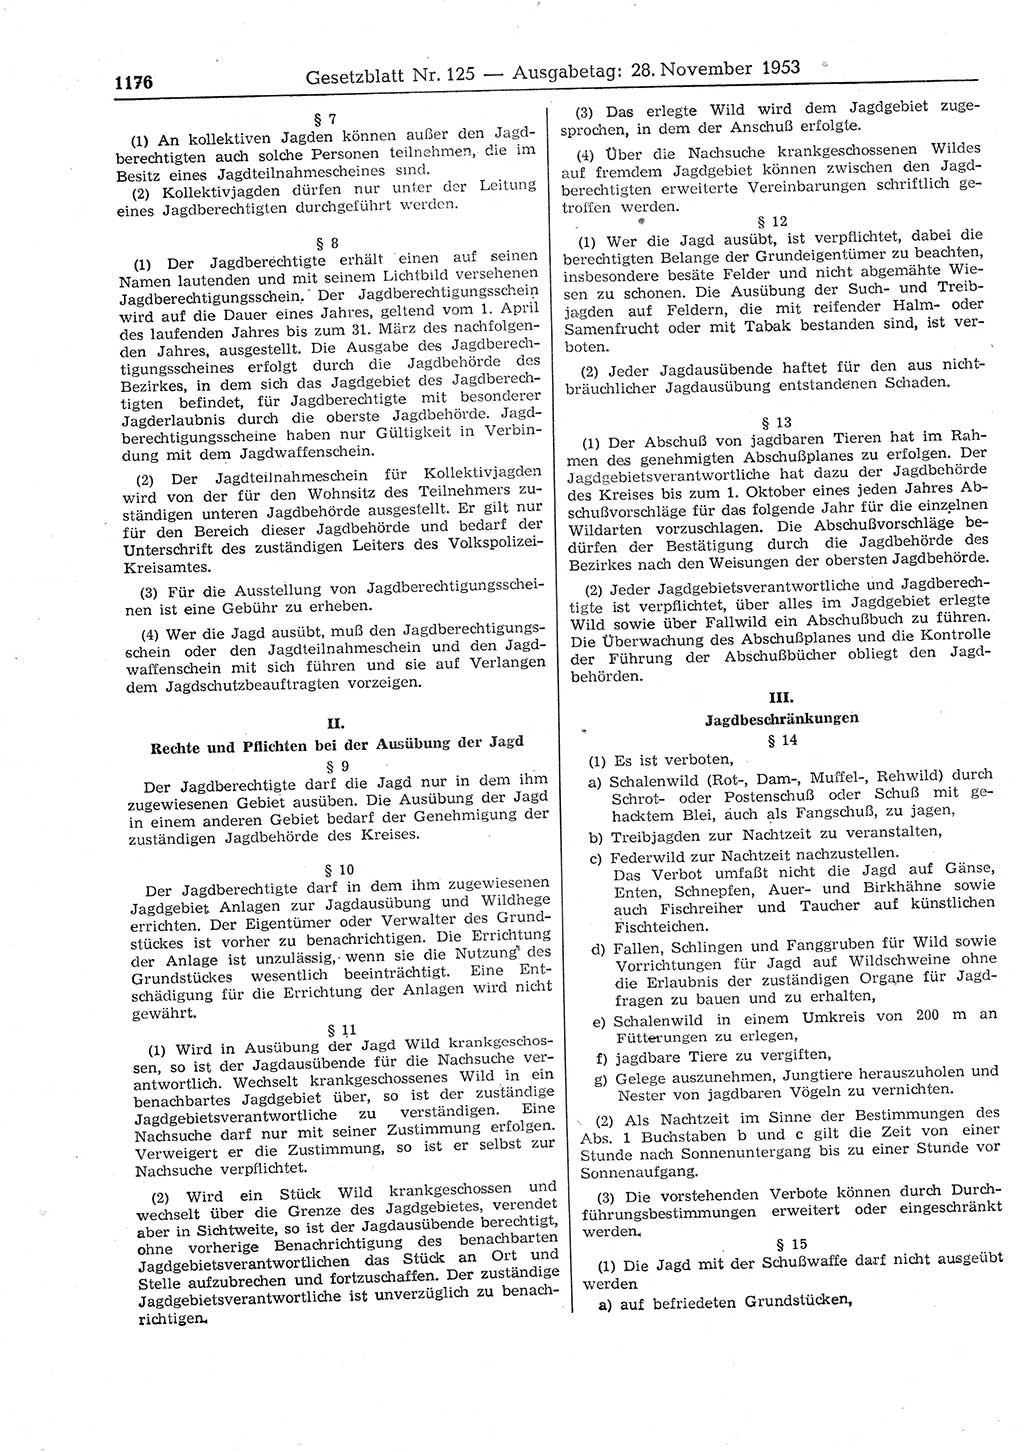 Gesetzblatt (GBl.) der Deutschen Demokratischen Republik (DDR) 1953, Seite 1176 (GBl. DDR 1953, S. 1176)